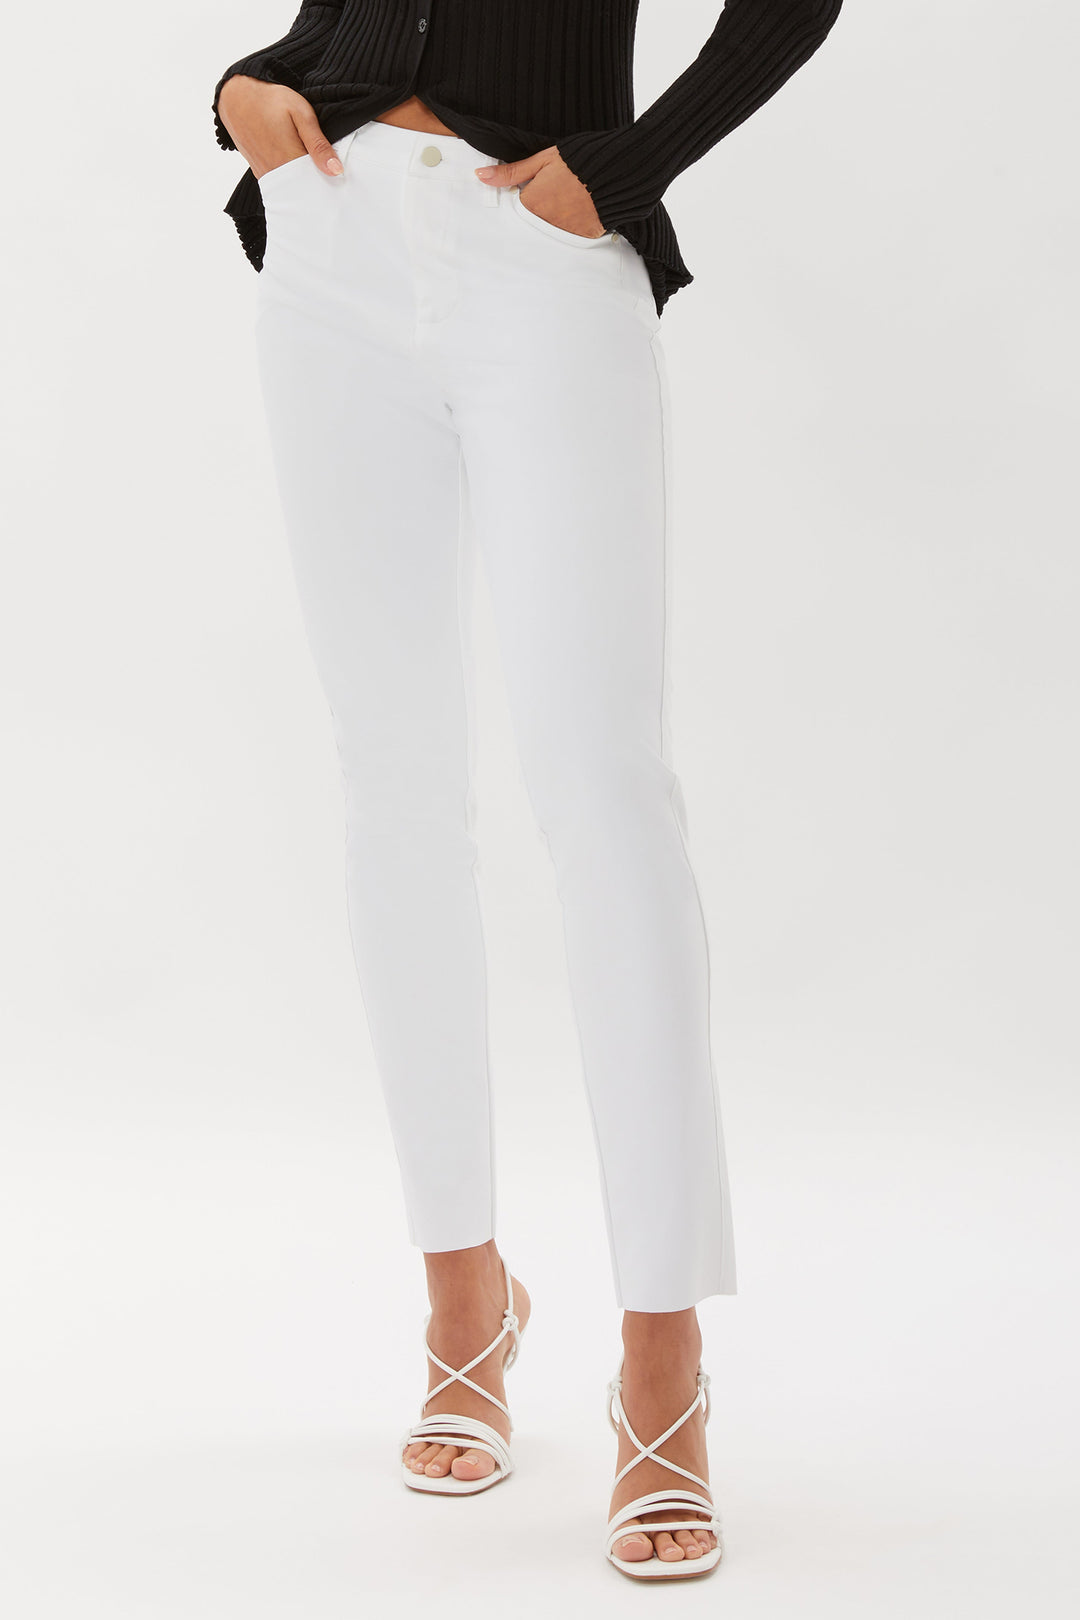 Palo Alto Jean Style Pant - White